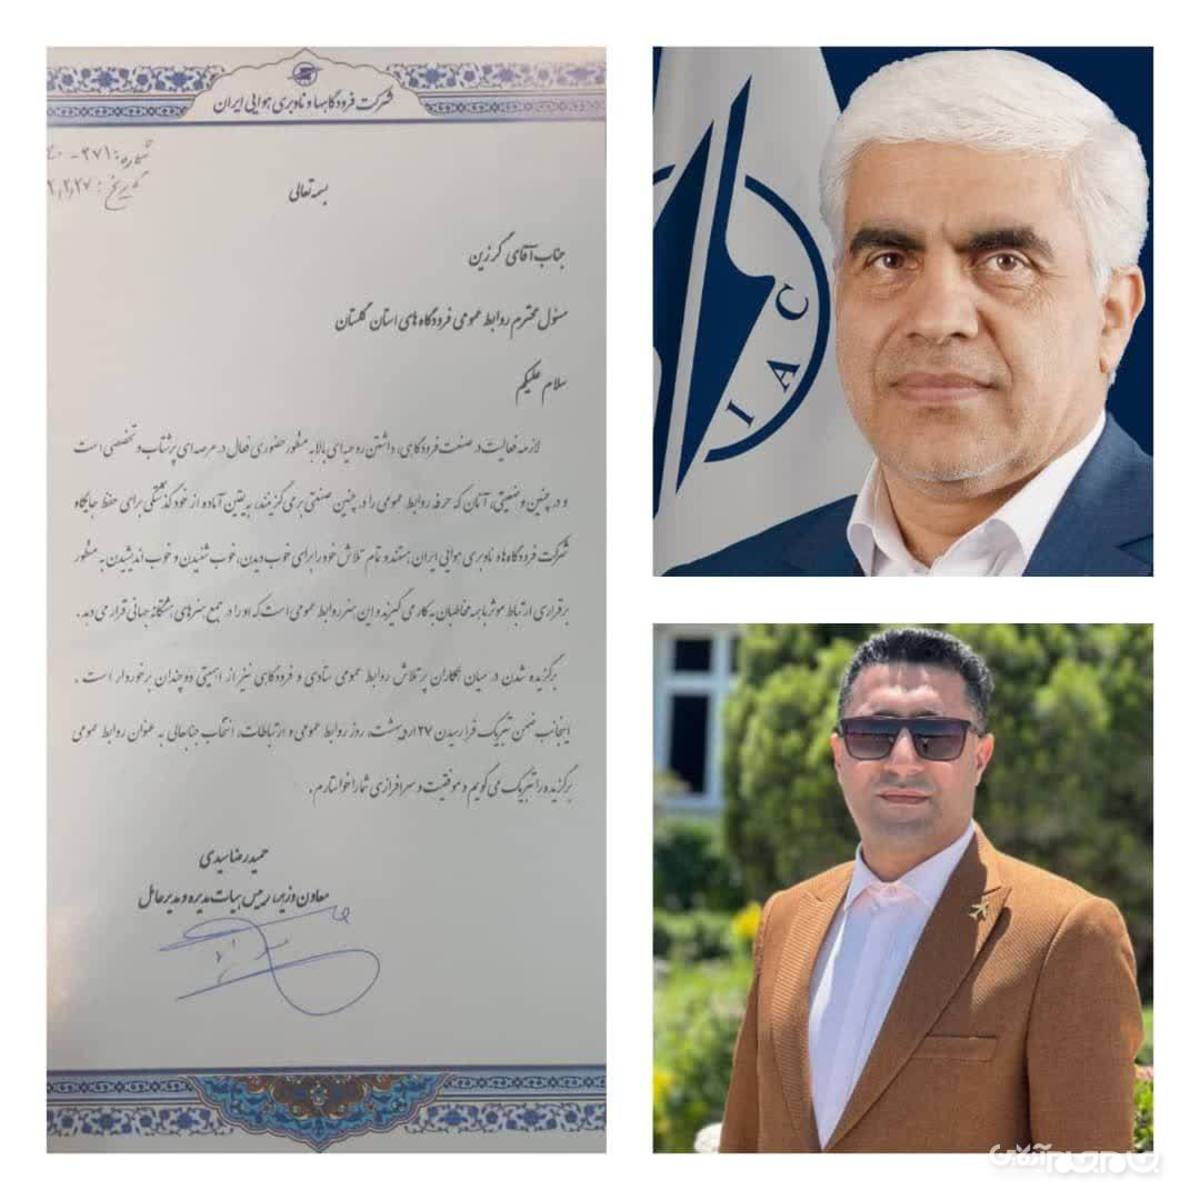 ️معاون وزیر و مدیرعامل شرکت فرودگاه ها و ناوبری هوایی ایران از مسؤل روابط عمومی فرودگاههای استان گلستان تقدیر کرد.